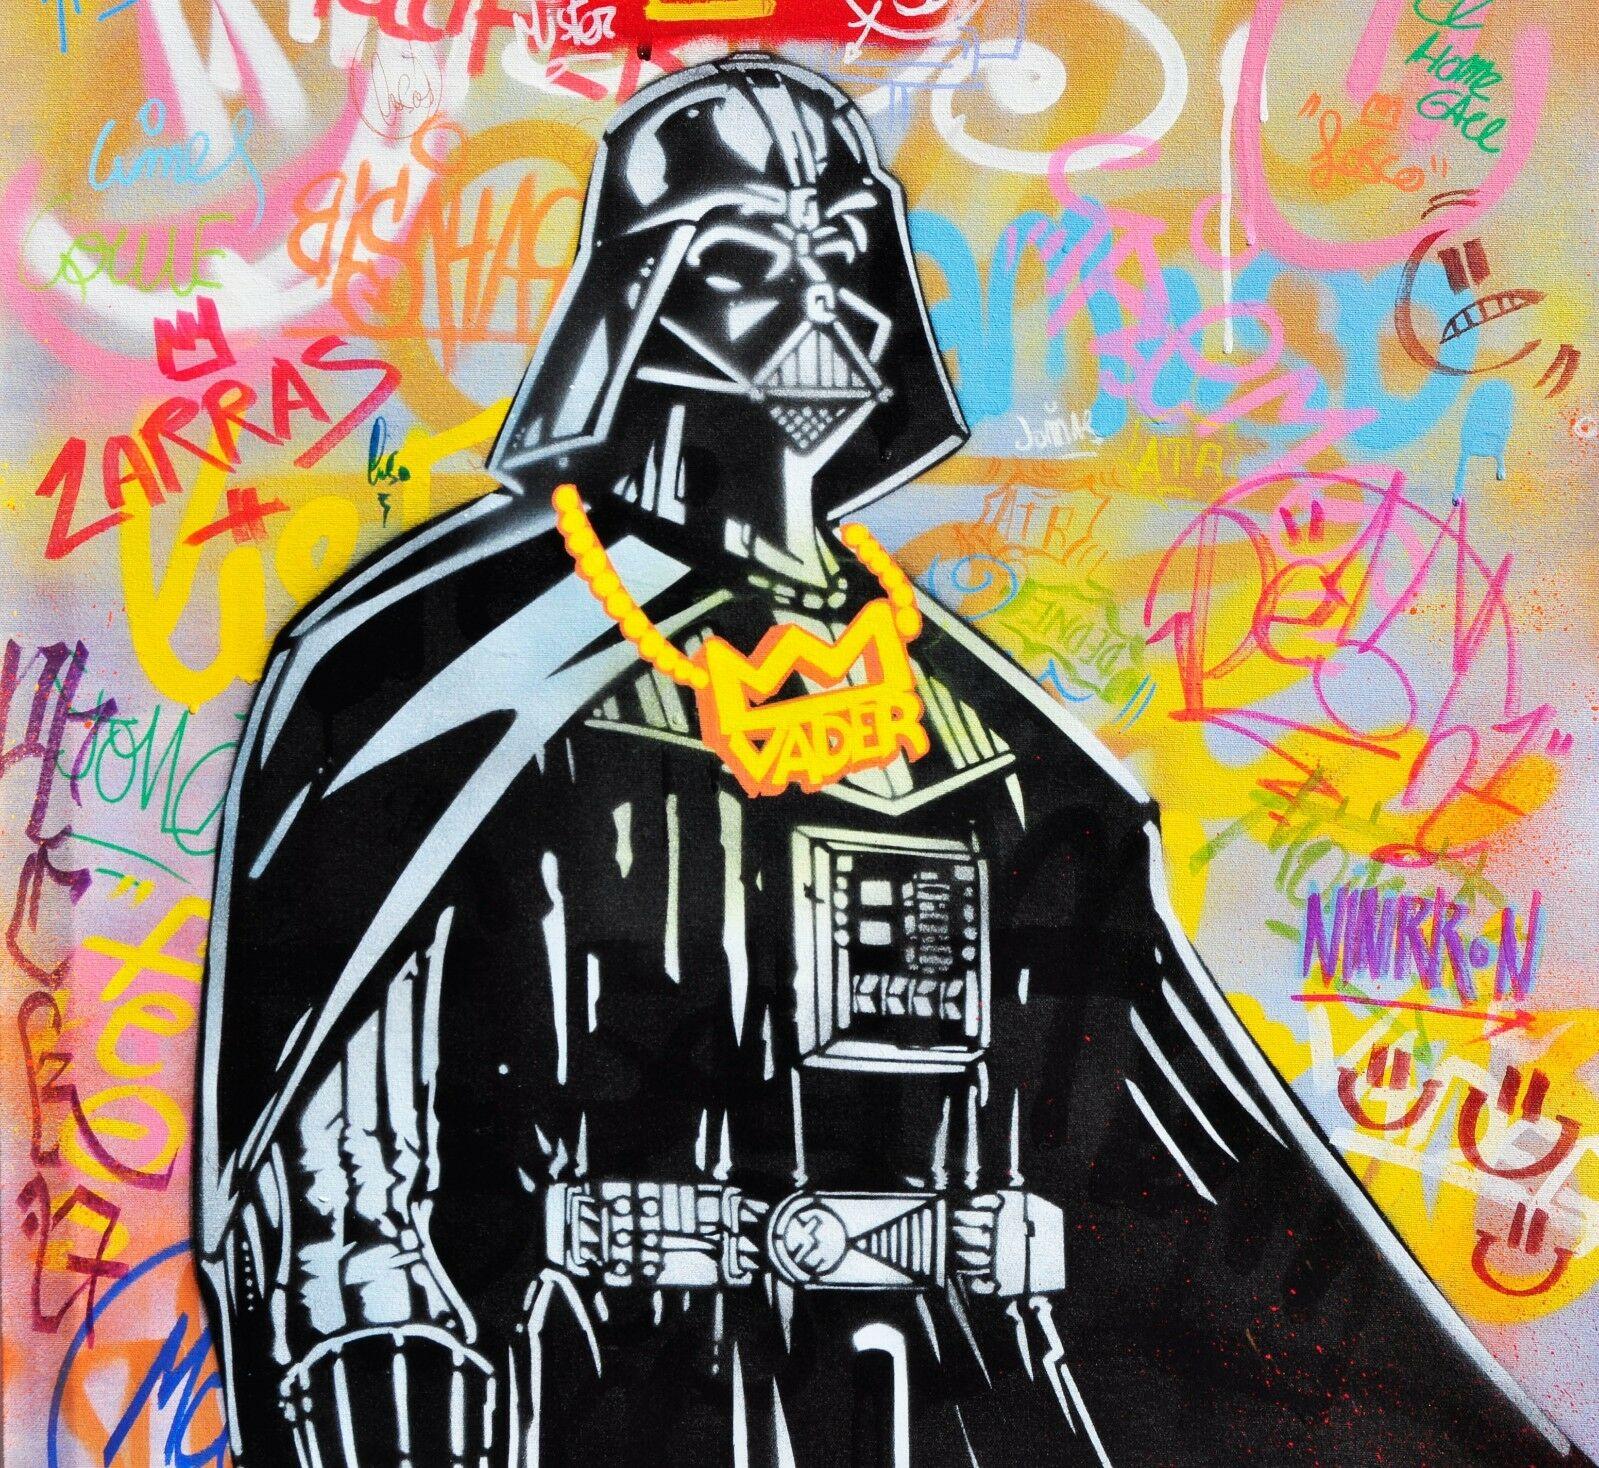 Titel: Ihr Ende... 
Die Technik: Graffiti 
Material: Acrylfarbe auf Leinwand, montiert auf einem Holzgestell 
Größe: 100 cm x 70 cm x 5 cm 
Die Philosophie des Künstlers: 
Graffiti an den Wänden von Barcelona 

